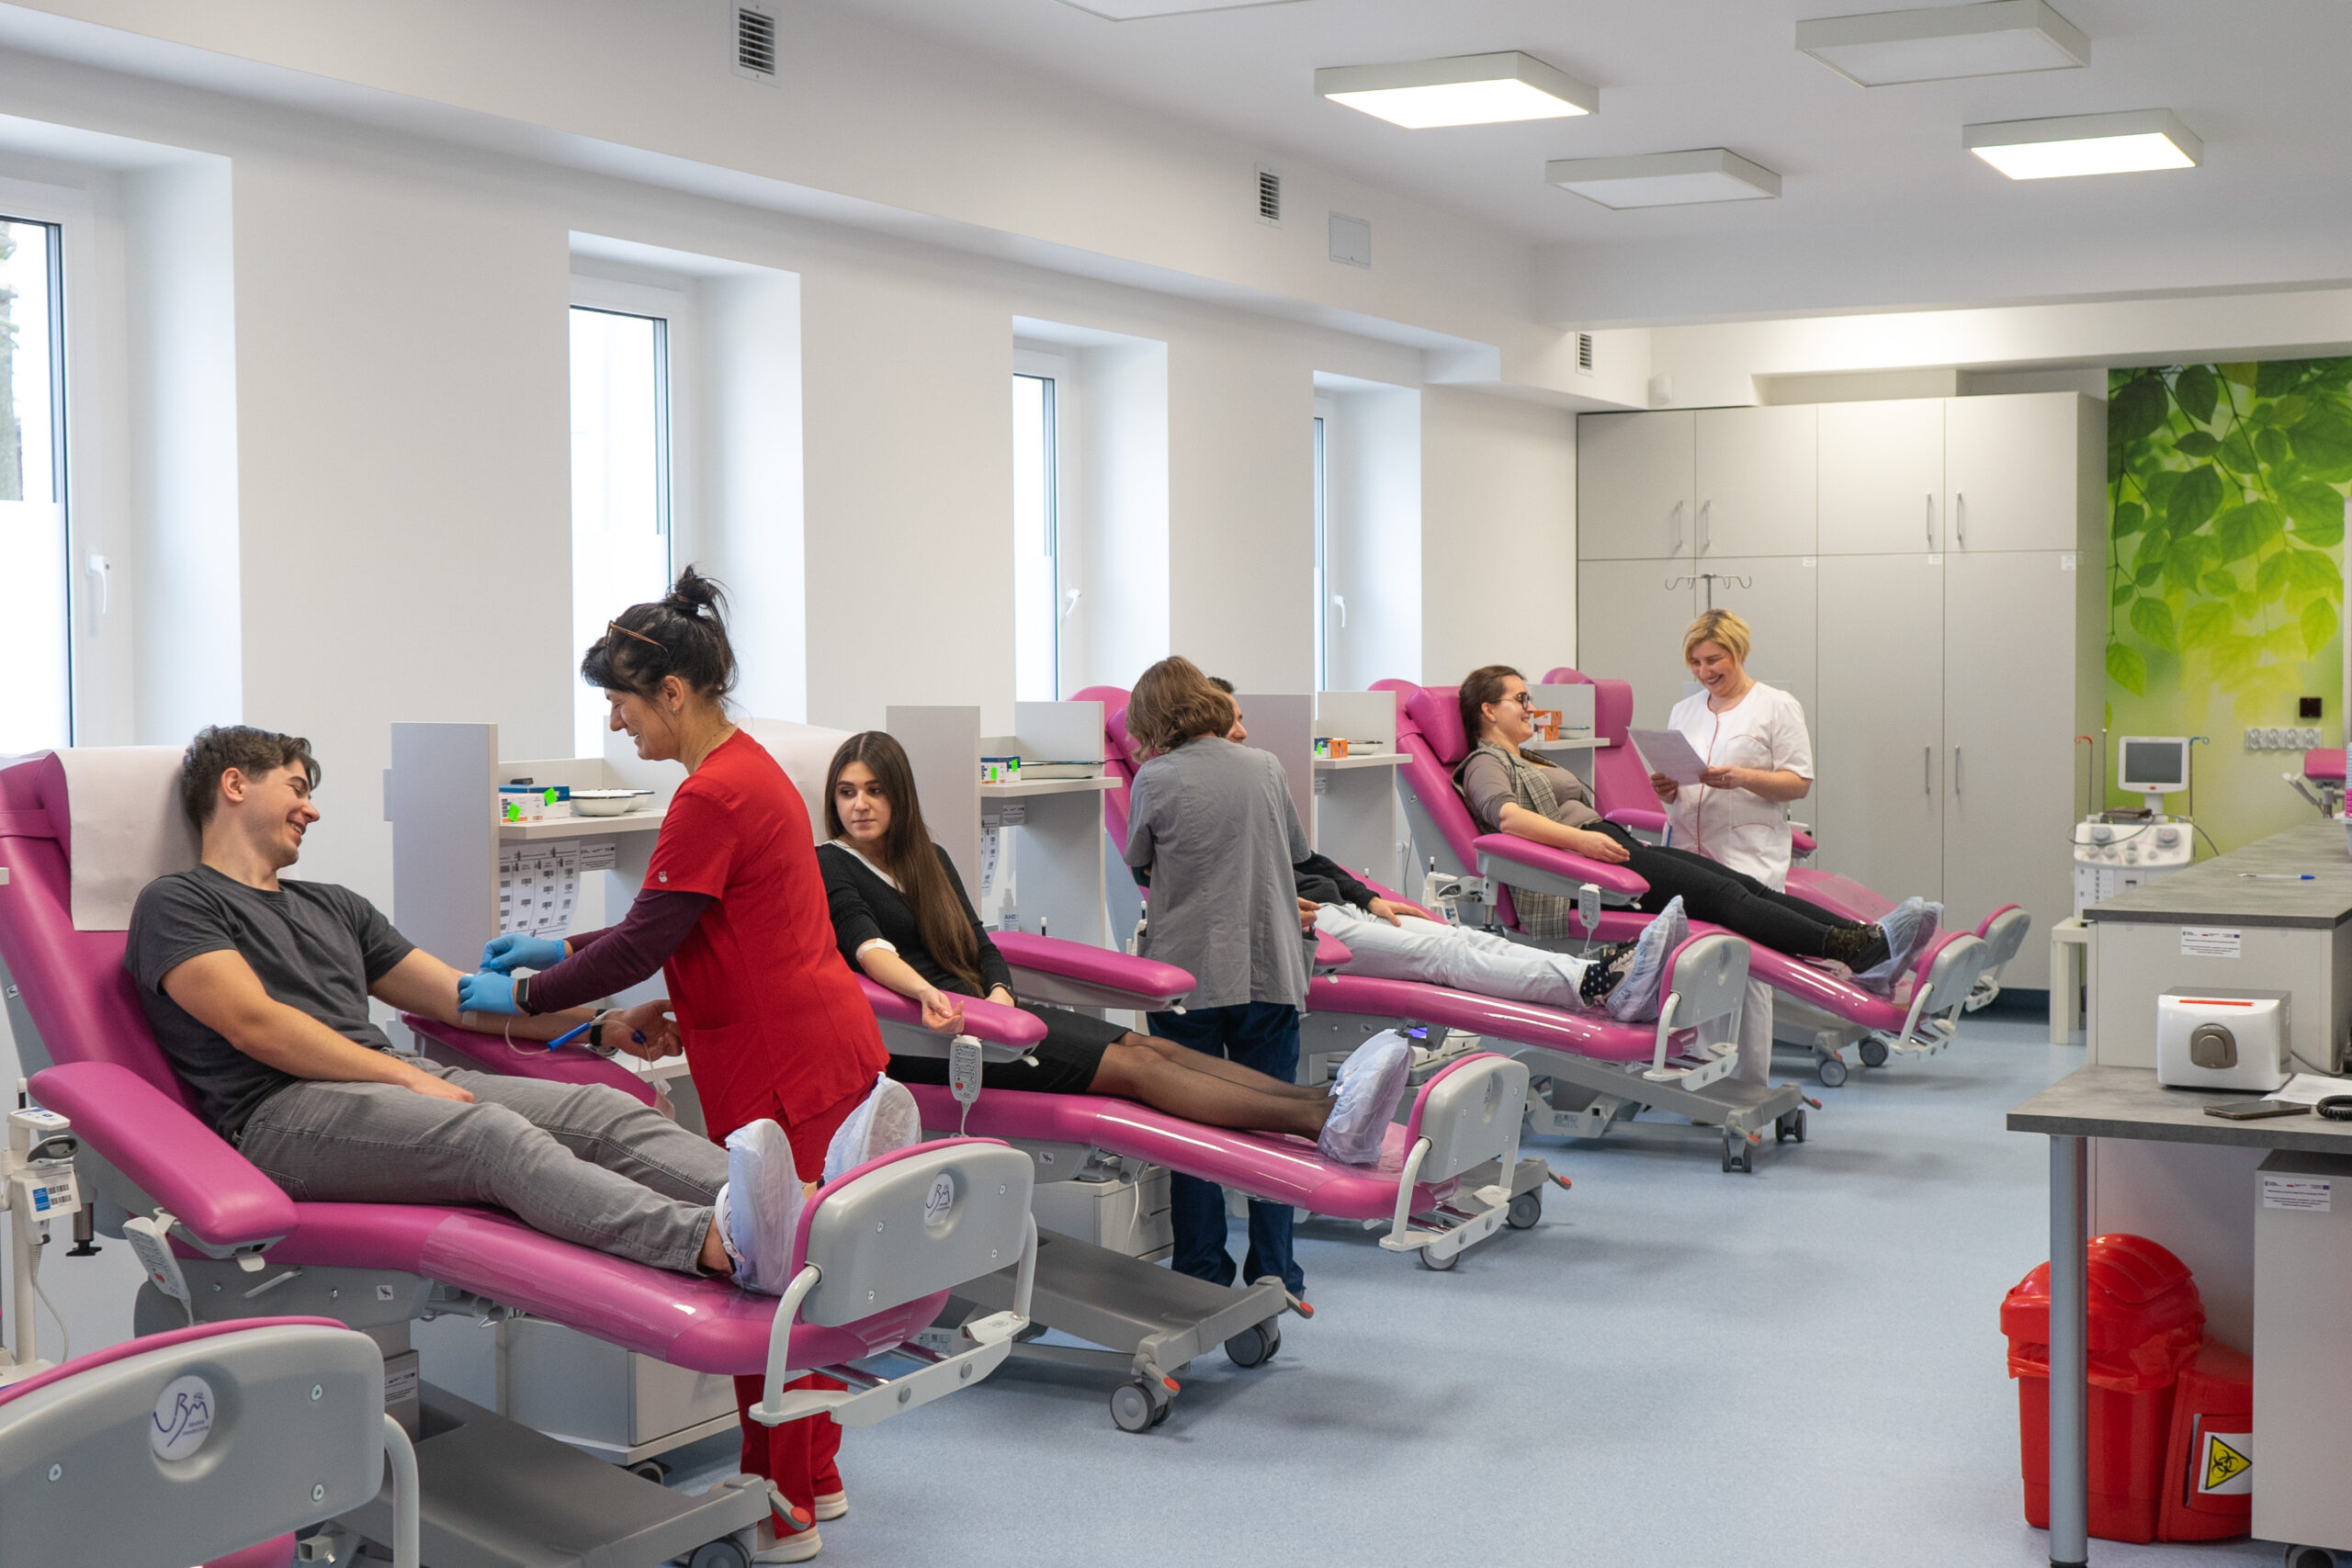 Zdjęcie przedstawia salę do pobierania krwi, gdzie znajdują się osoby oddające krew oraz personel medyczny